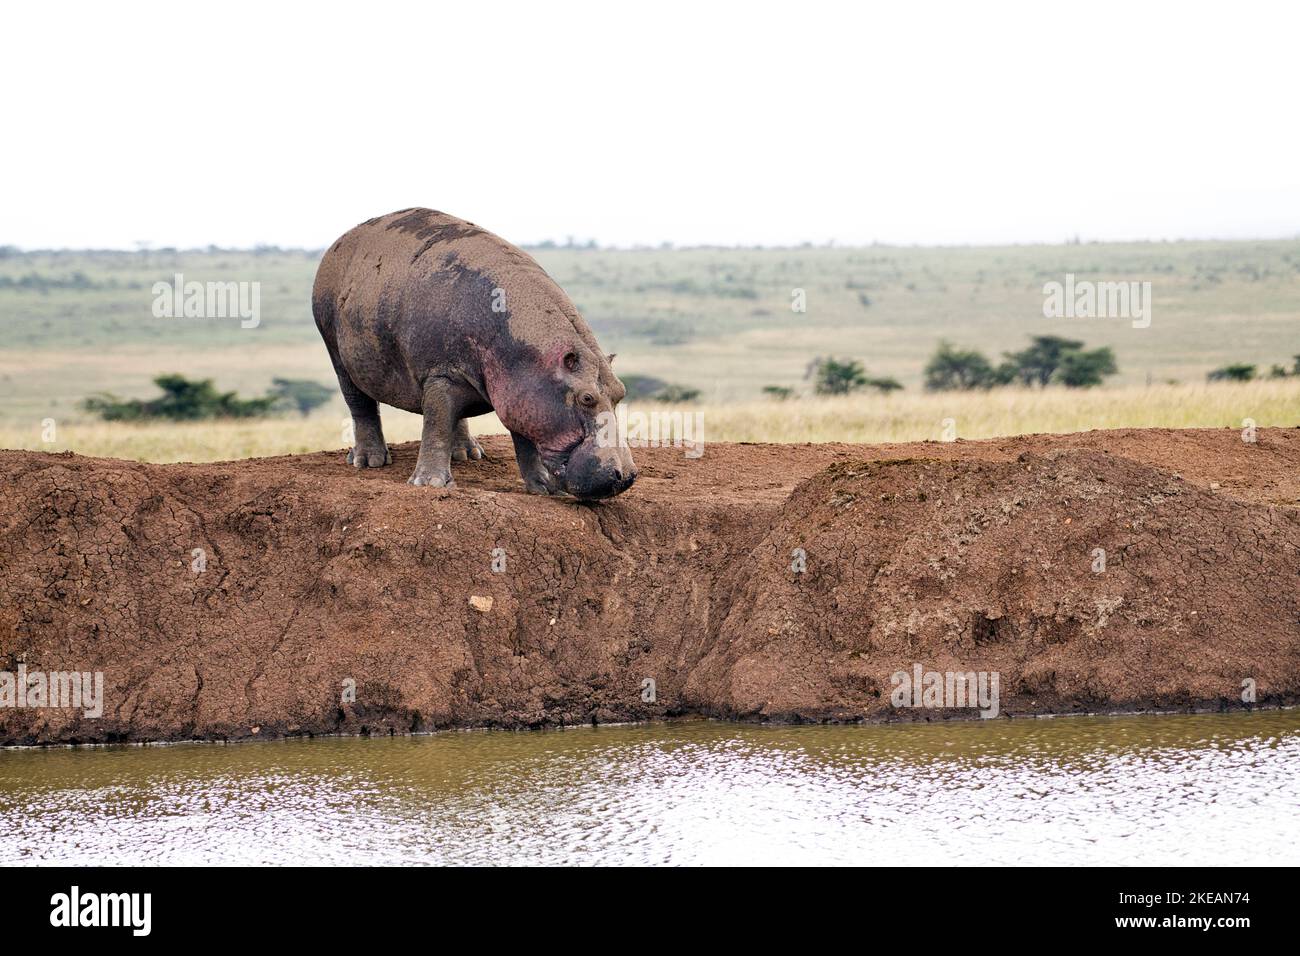 Hippopotame (Hippopotamus amphibius) songe à retourner dans l'eau après avoir paître sur terre Banque D'Images